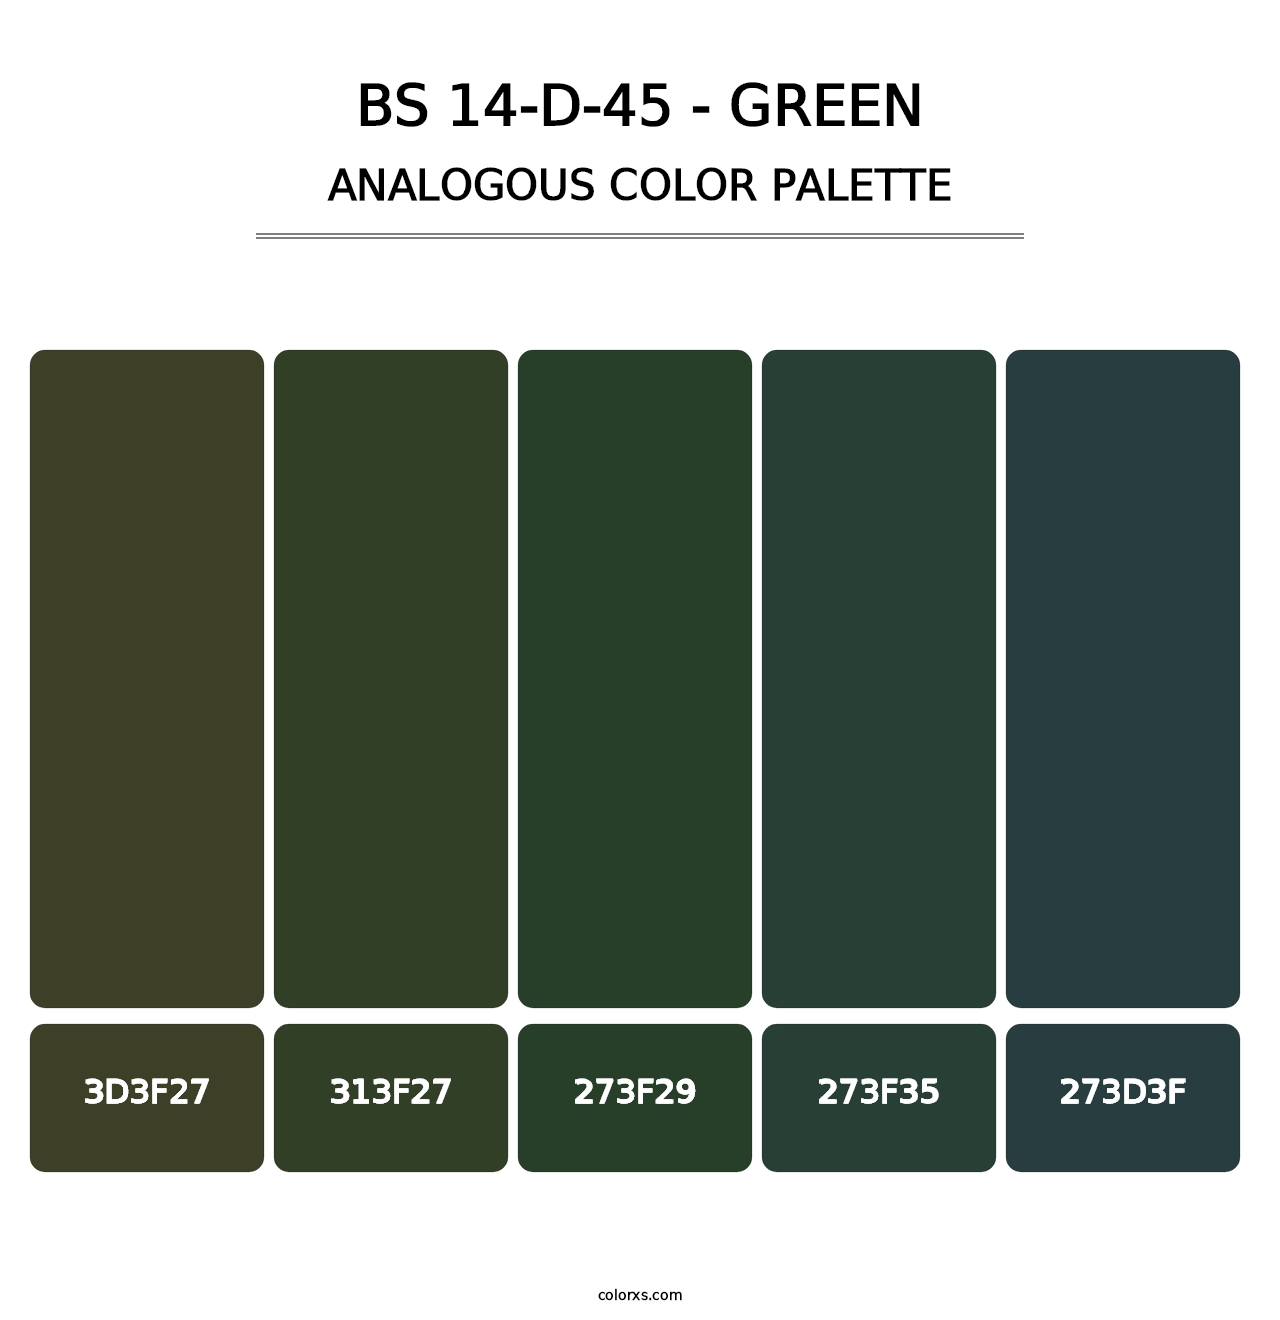 BS 14-D-45 - Green - Analogous Color Palette